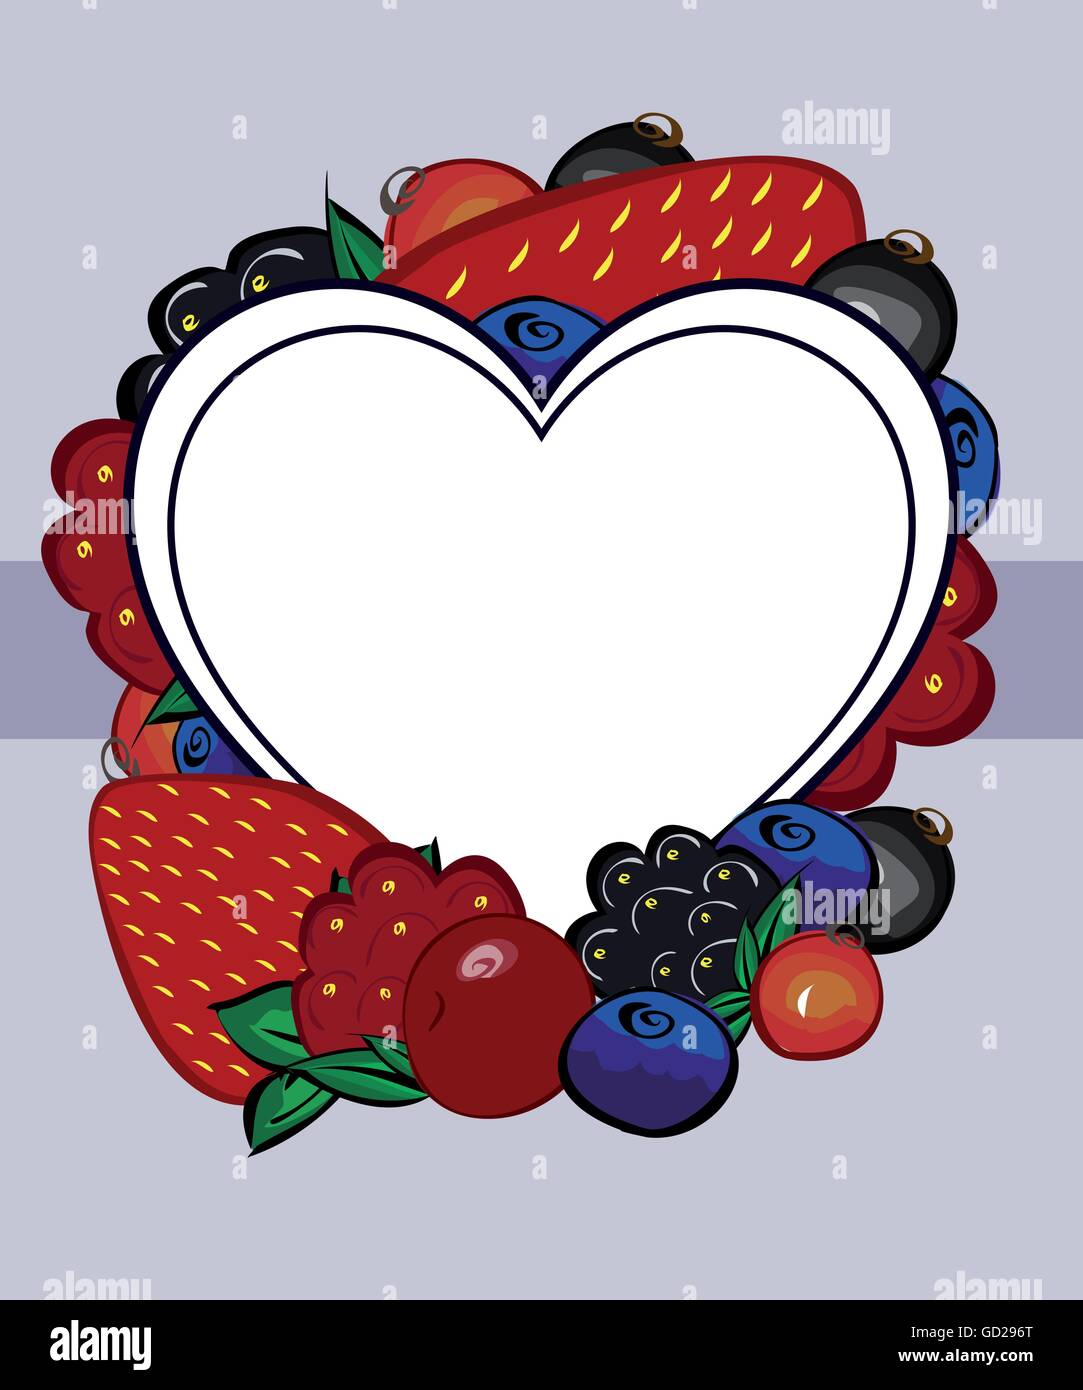 Vector drawn berries label heart Stock Vector Image & Art - Alamy